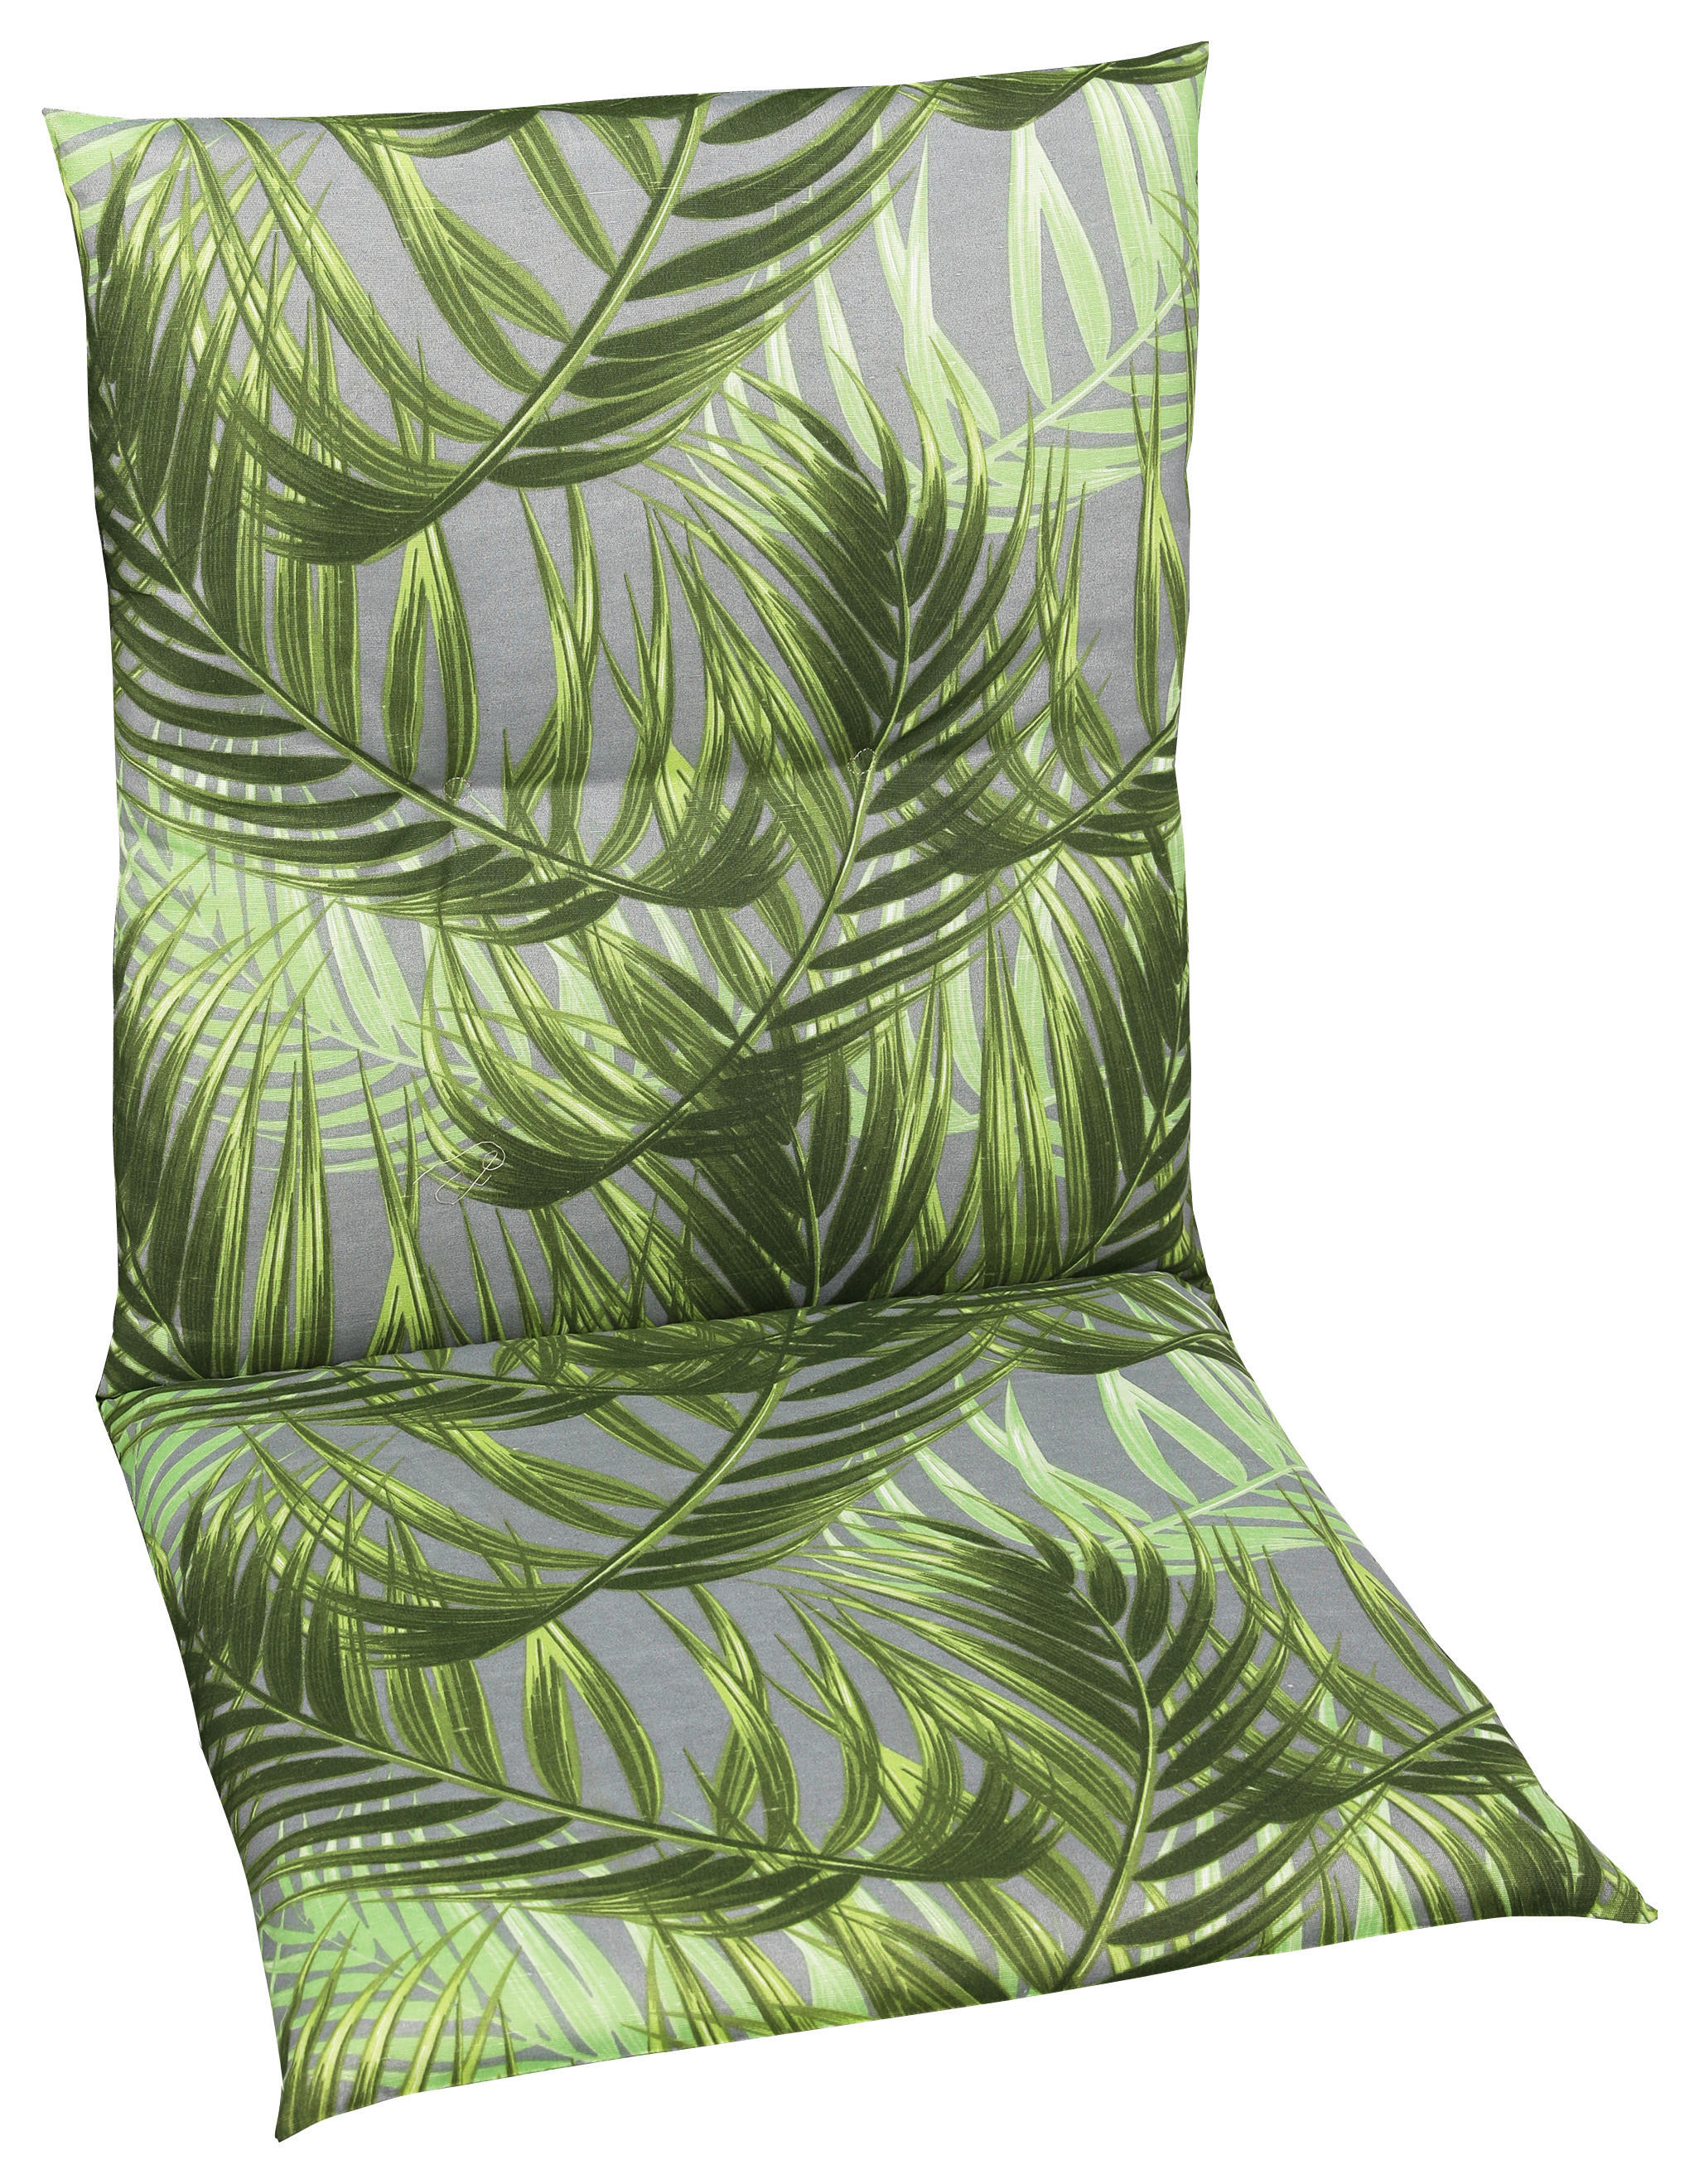 Sesselauflage mit Blatt-Motiv Grün & Grau kaufen